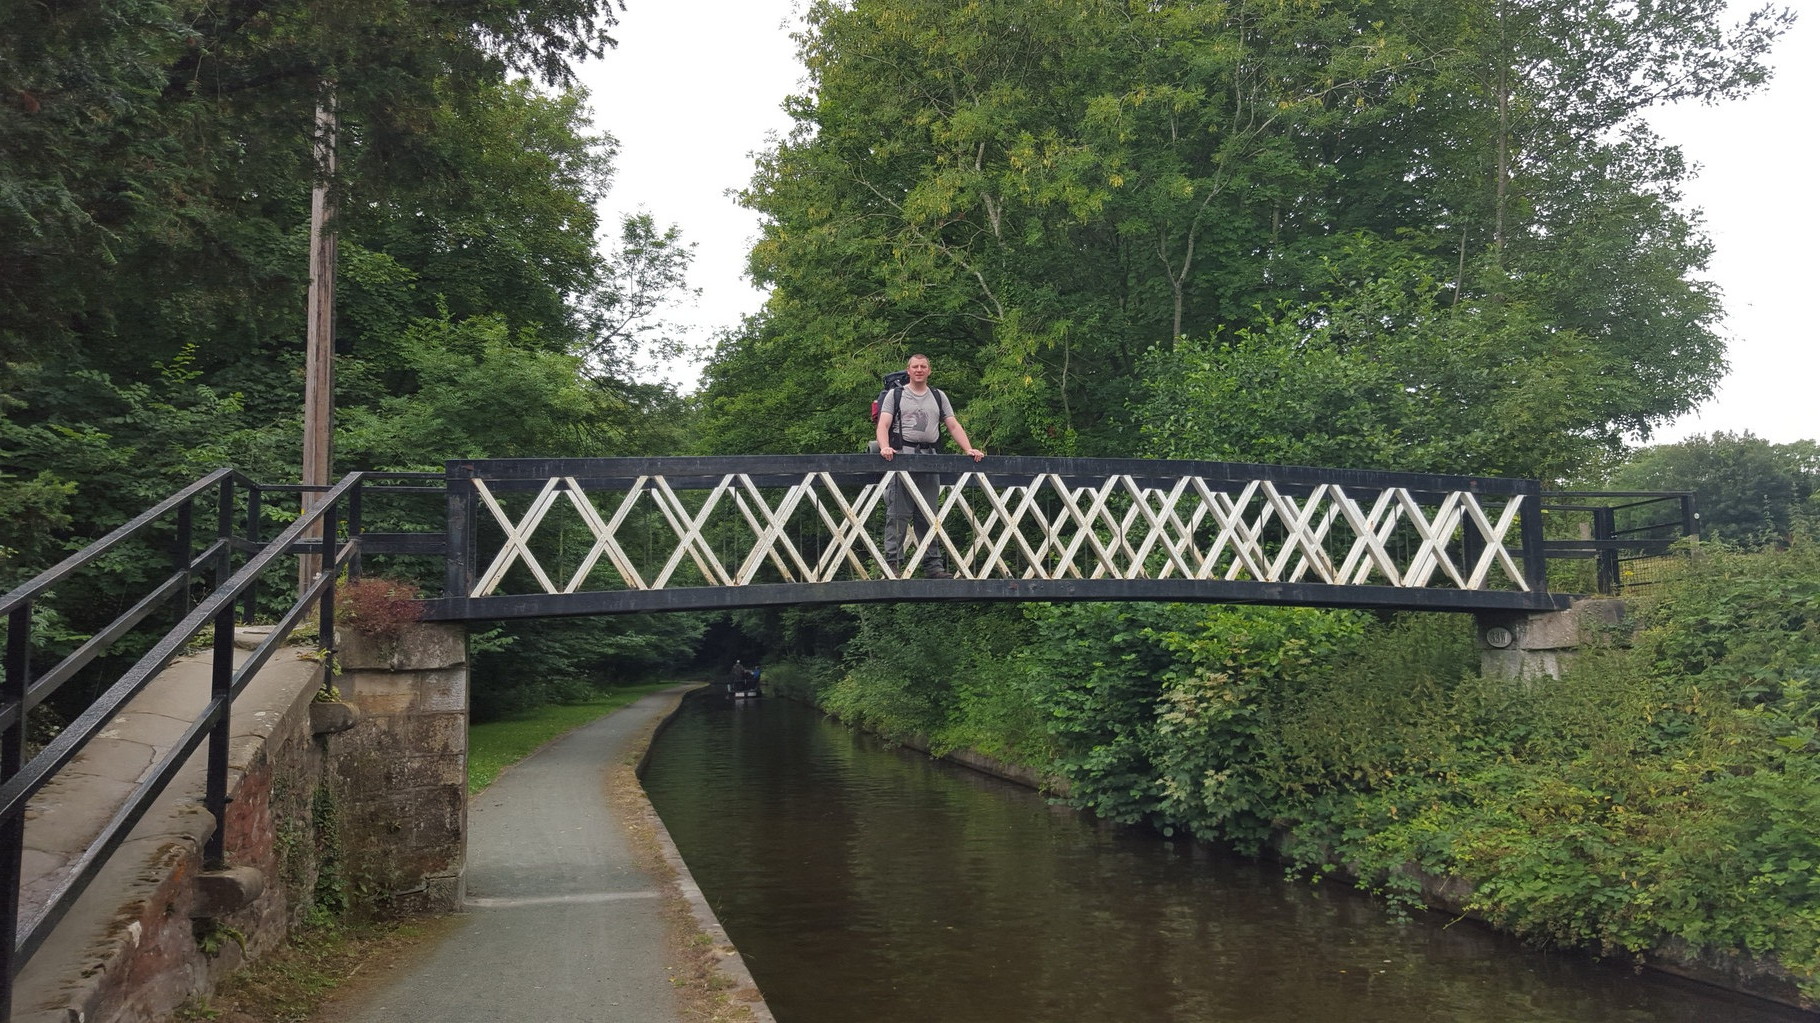 Steve on a bridge